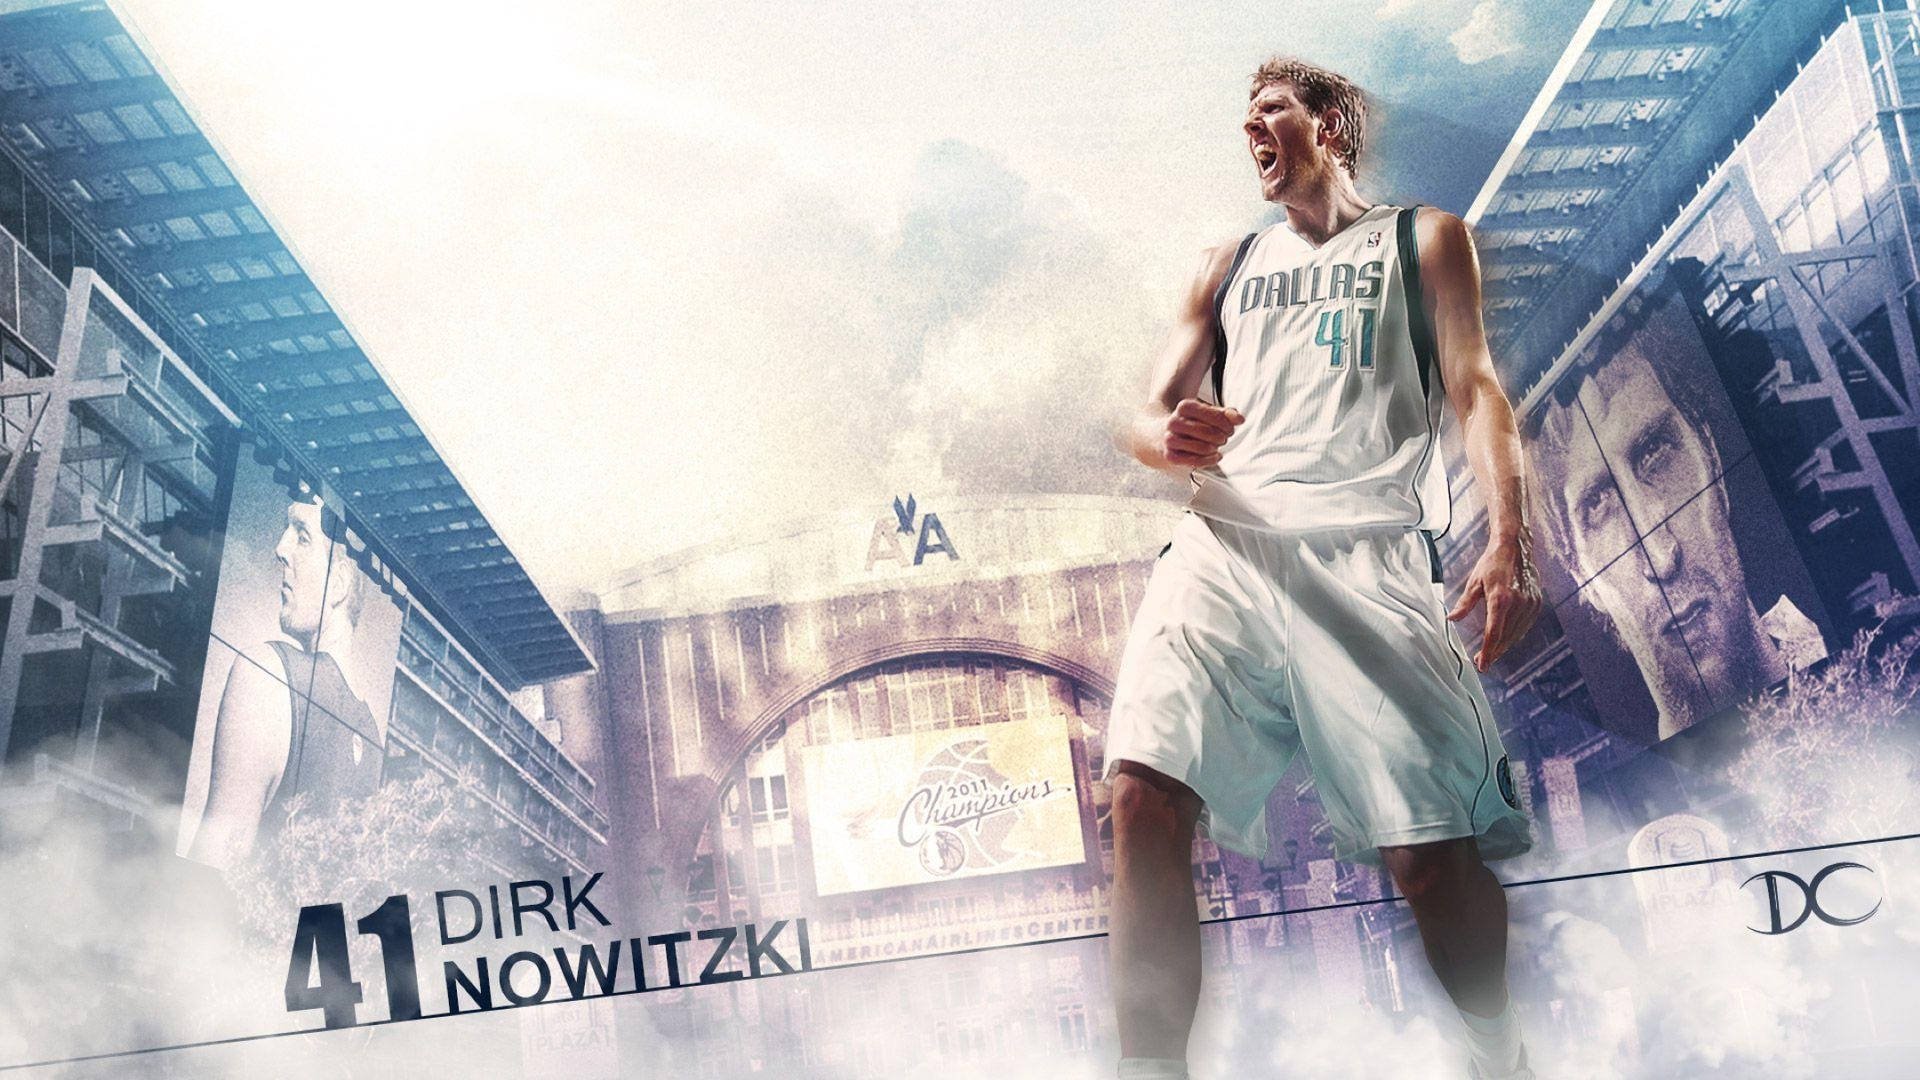 2011 Nba Champion Dirk Nowitzki Background